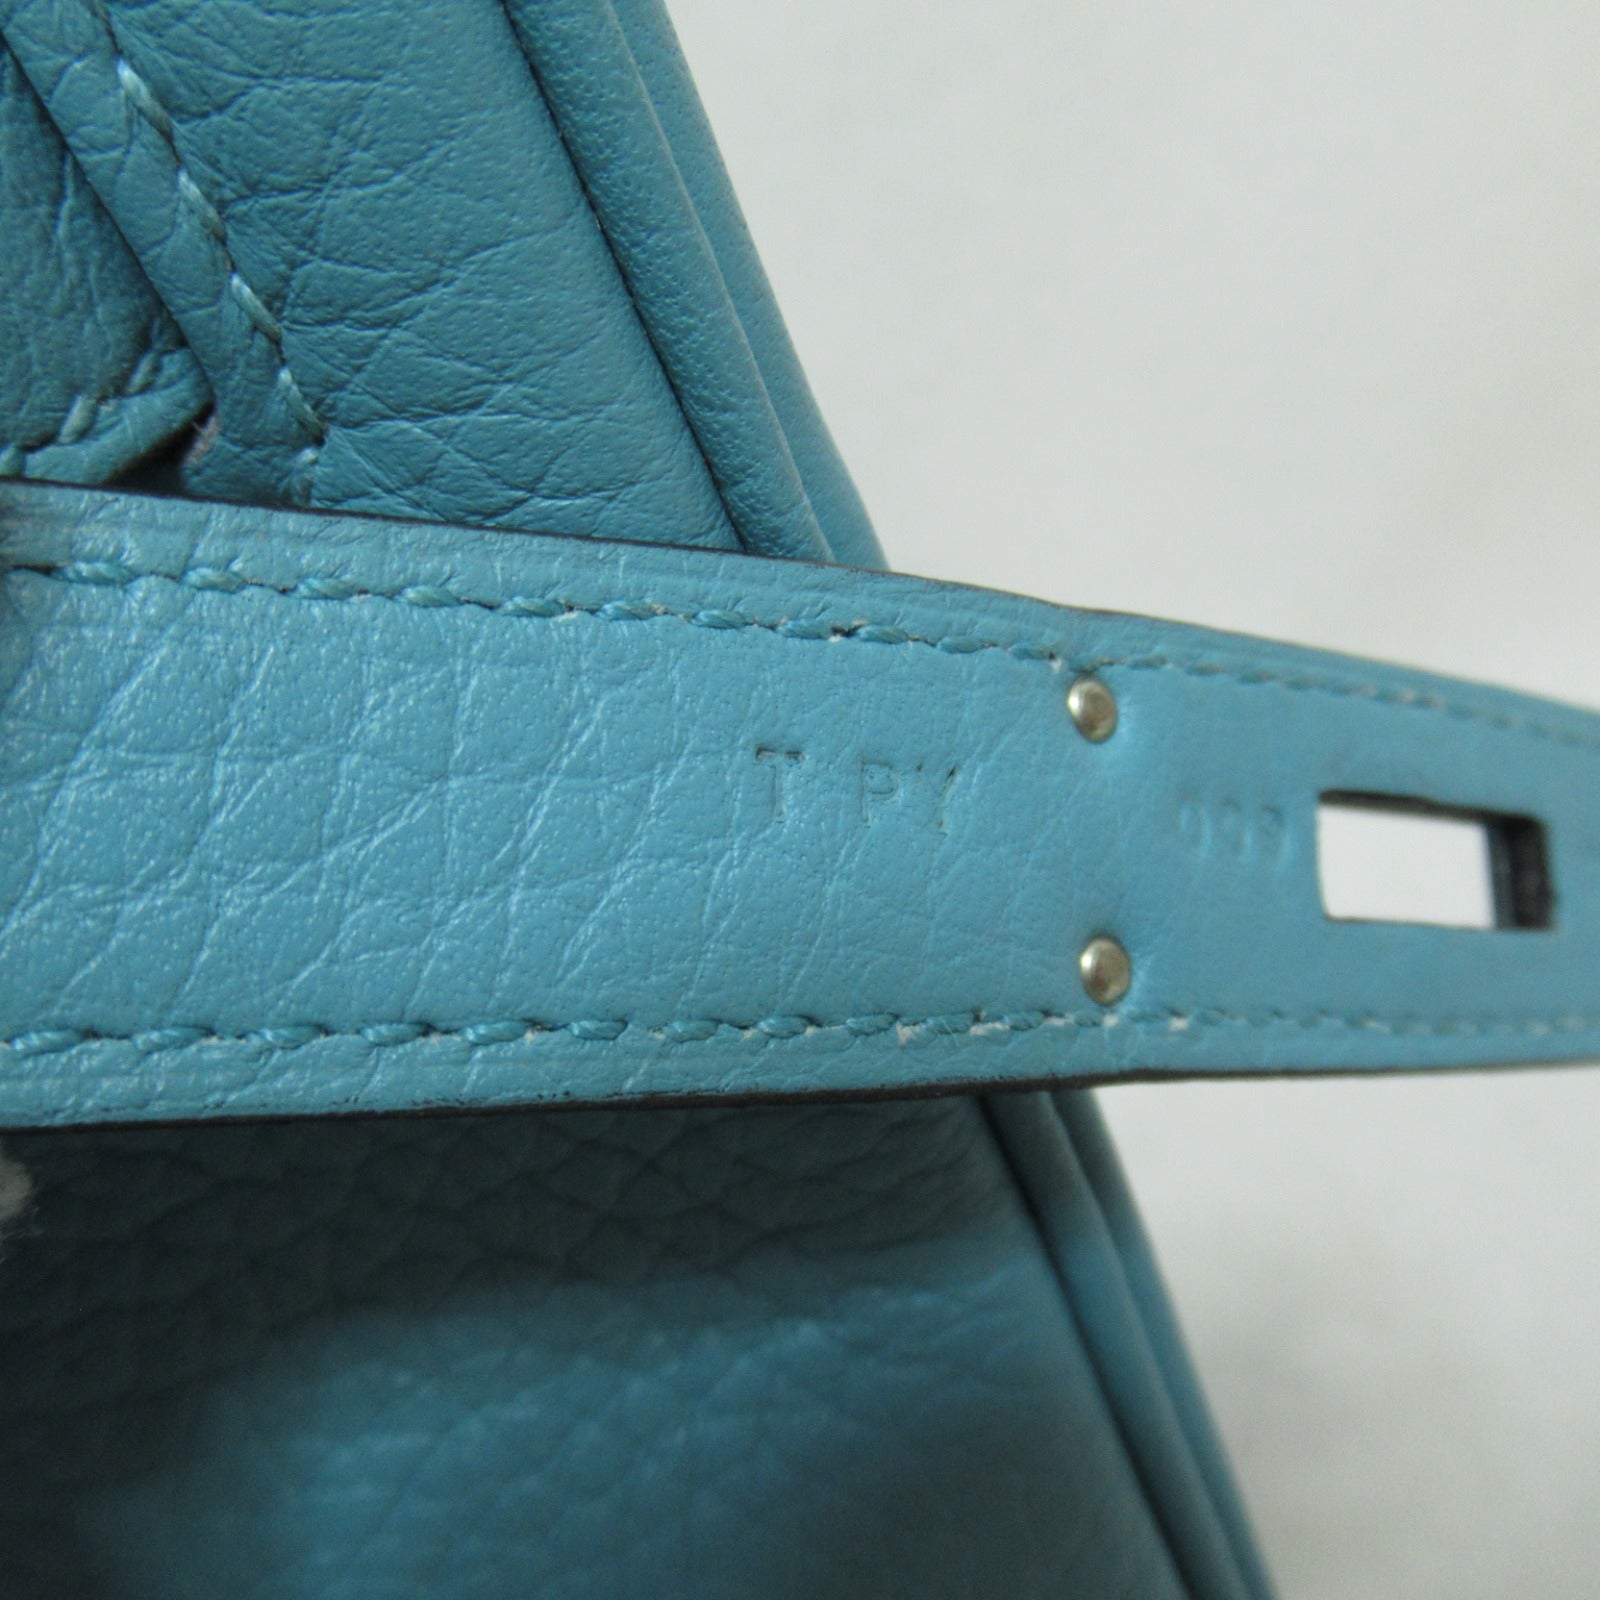 Hermes Birkin 30 Blue Art Handbag Handbag Handbag